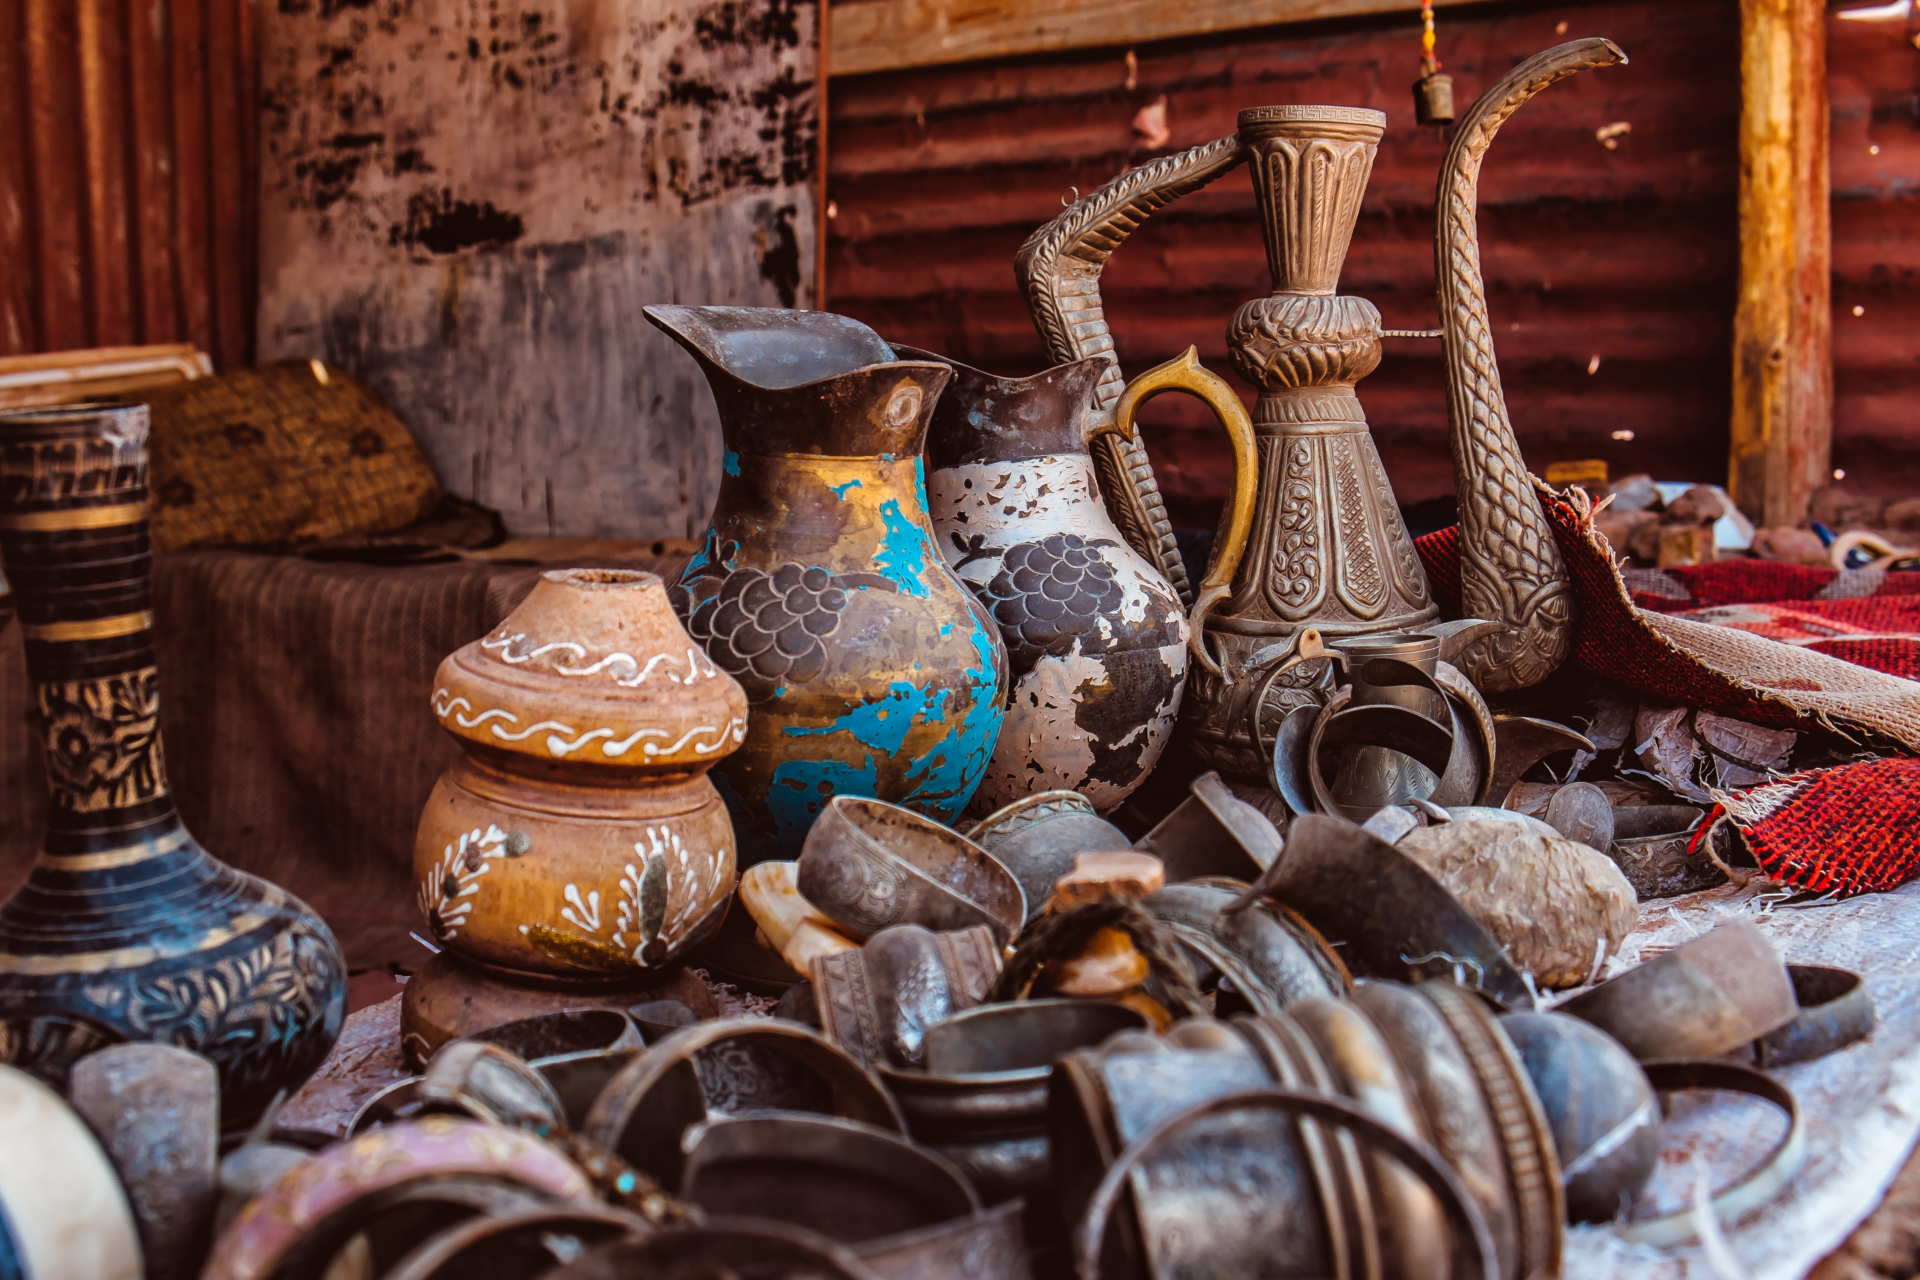 сувениры из иордании